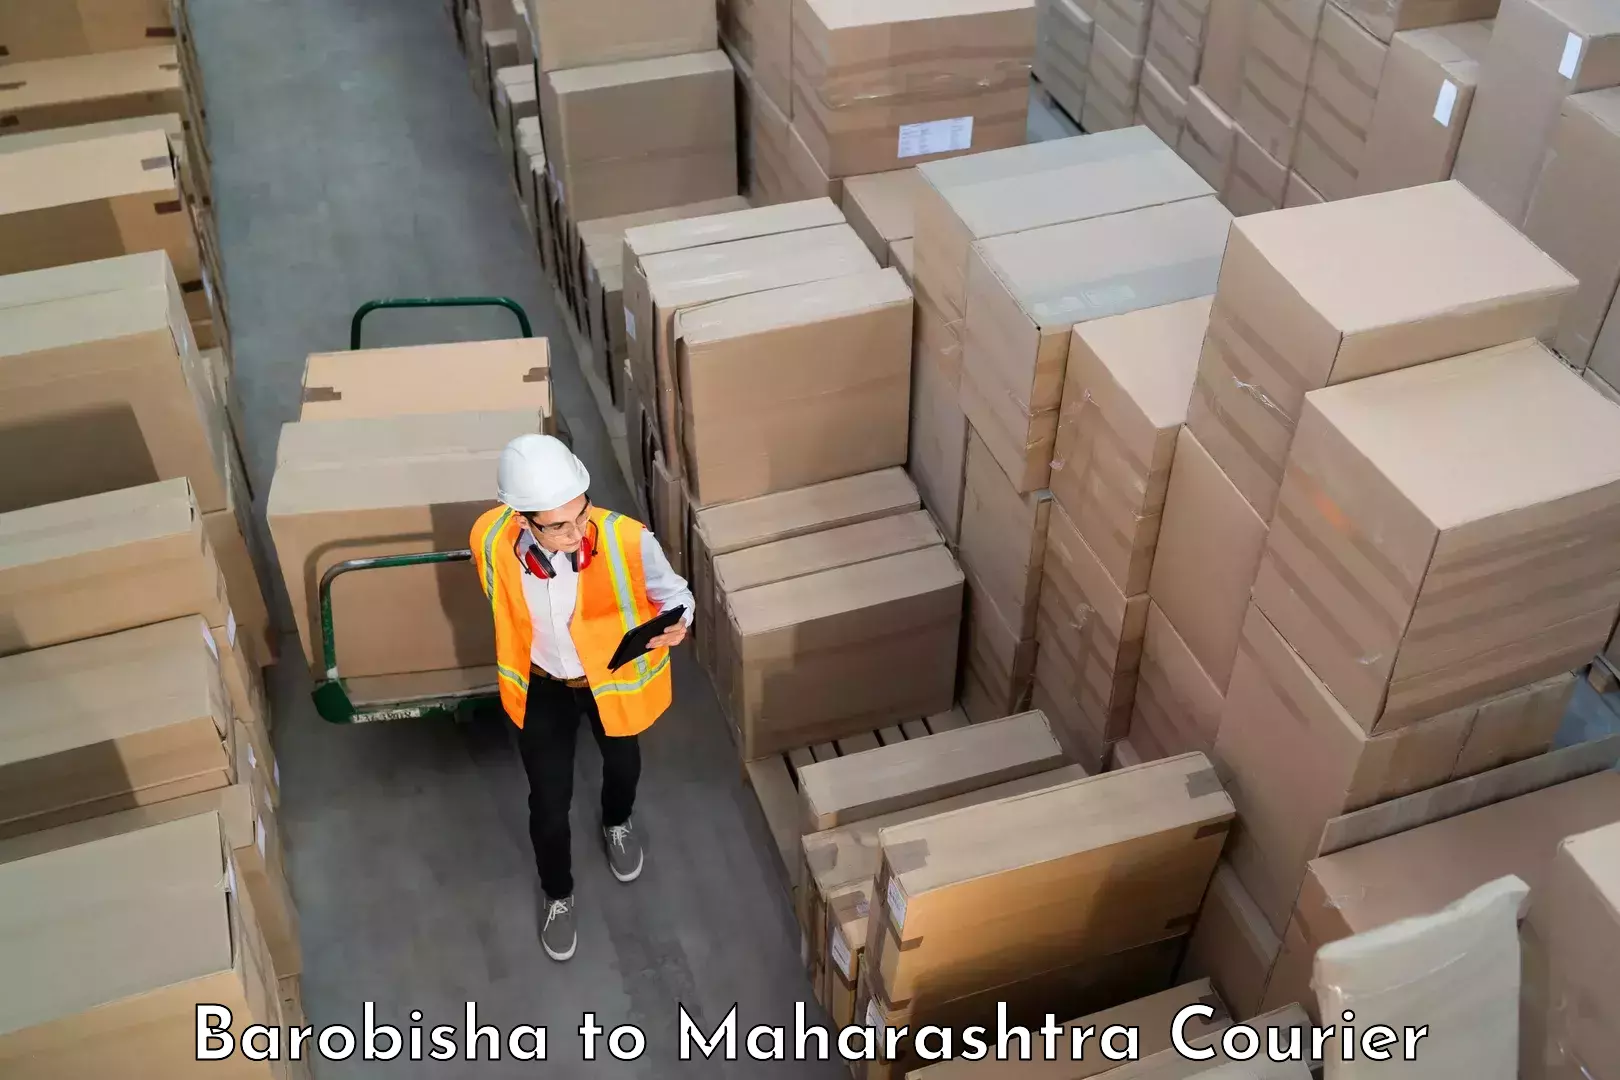 Luggage dispatch service Barobisha to Aurangabad